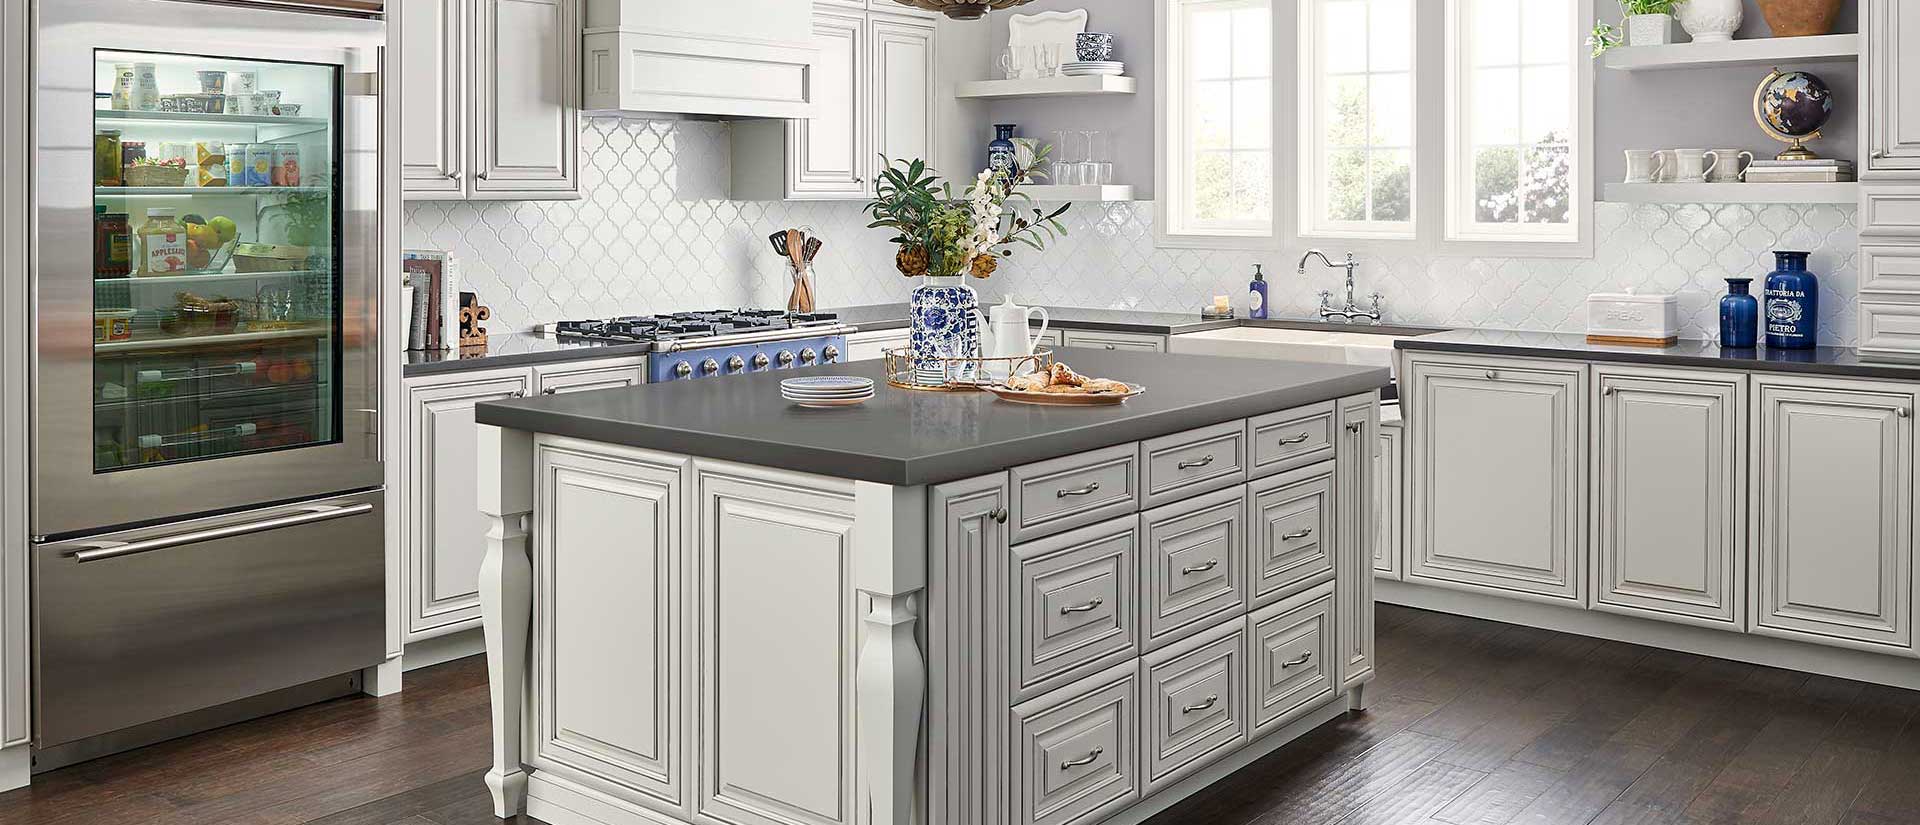 Une cuisine blanche avec un comptoir gris - une idée de design intrigante